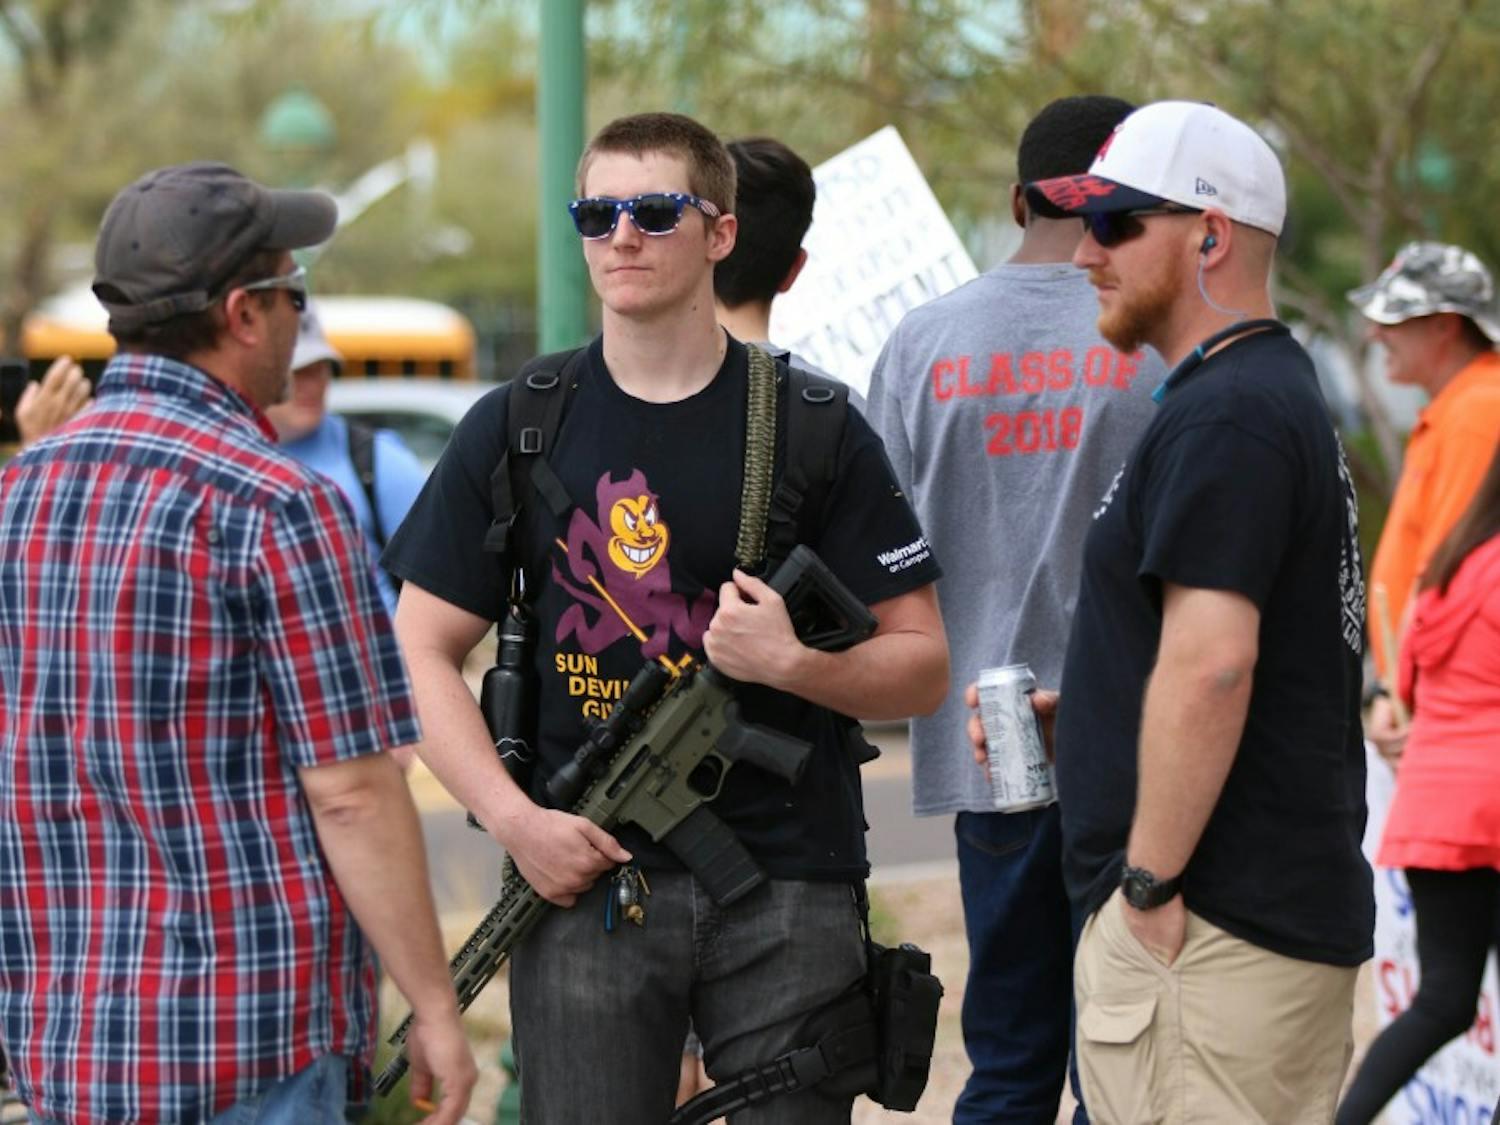 ASU student with gun